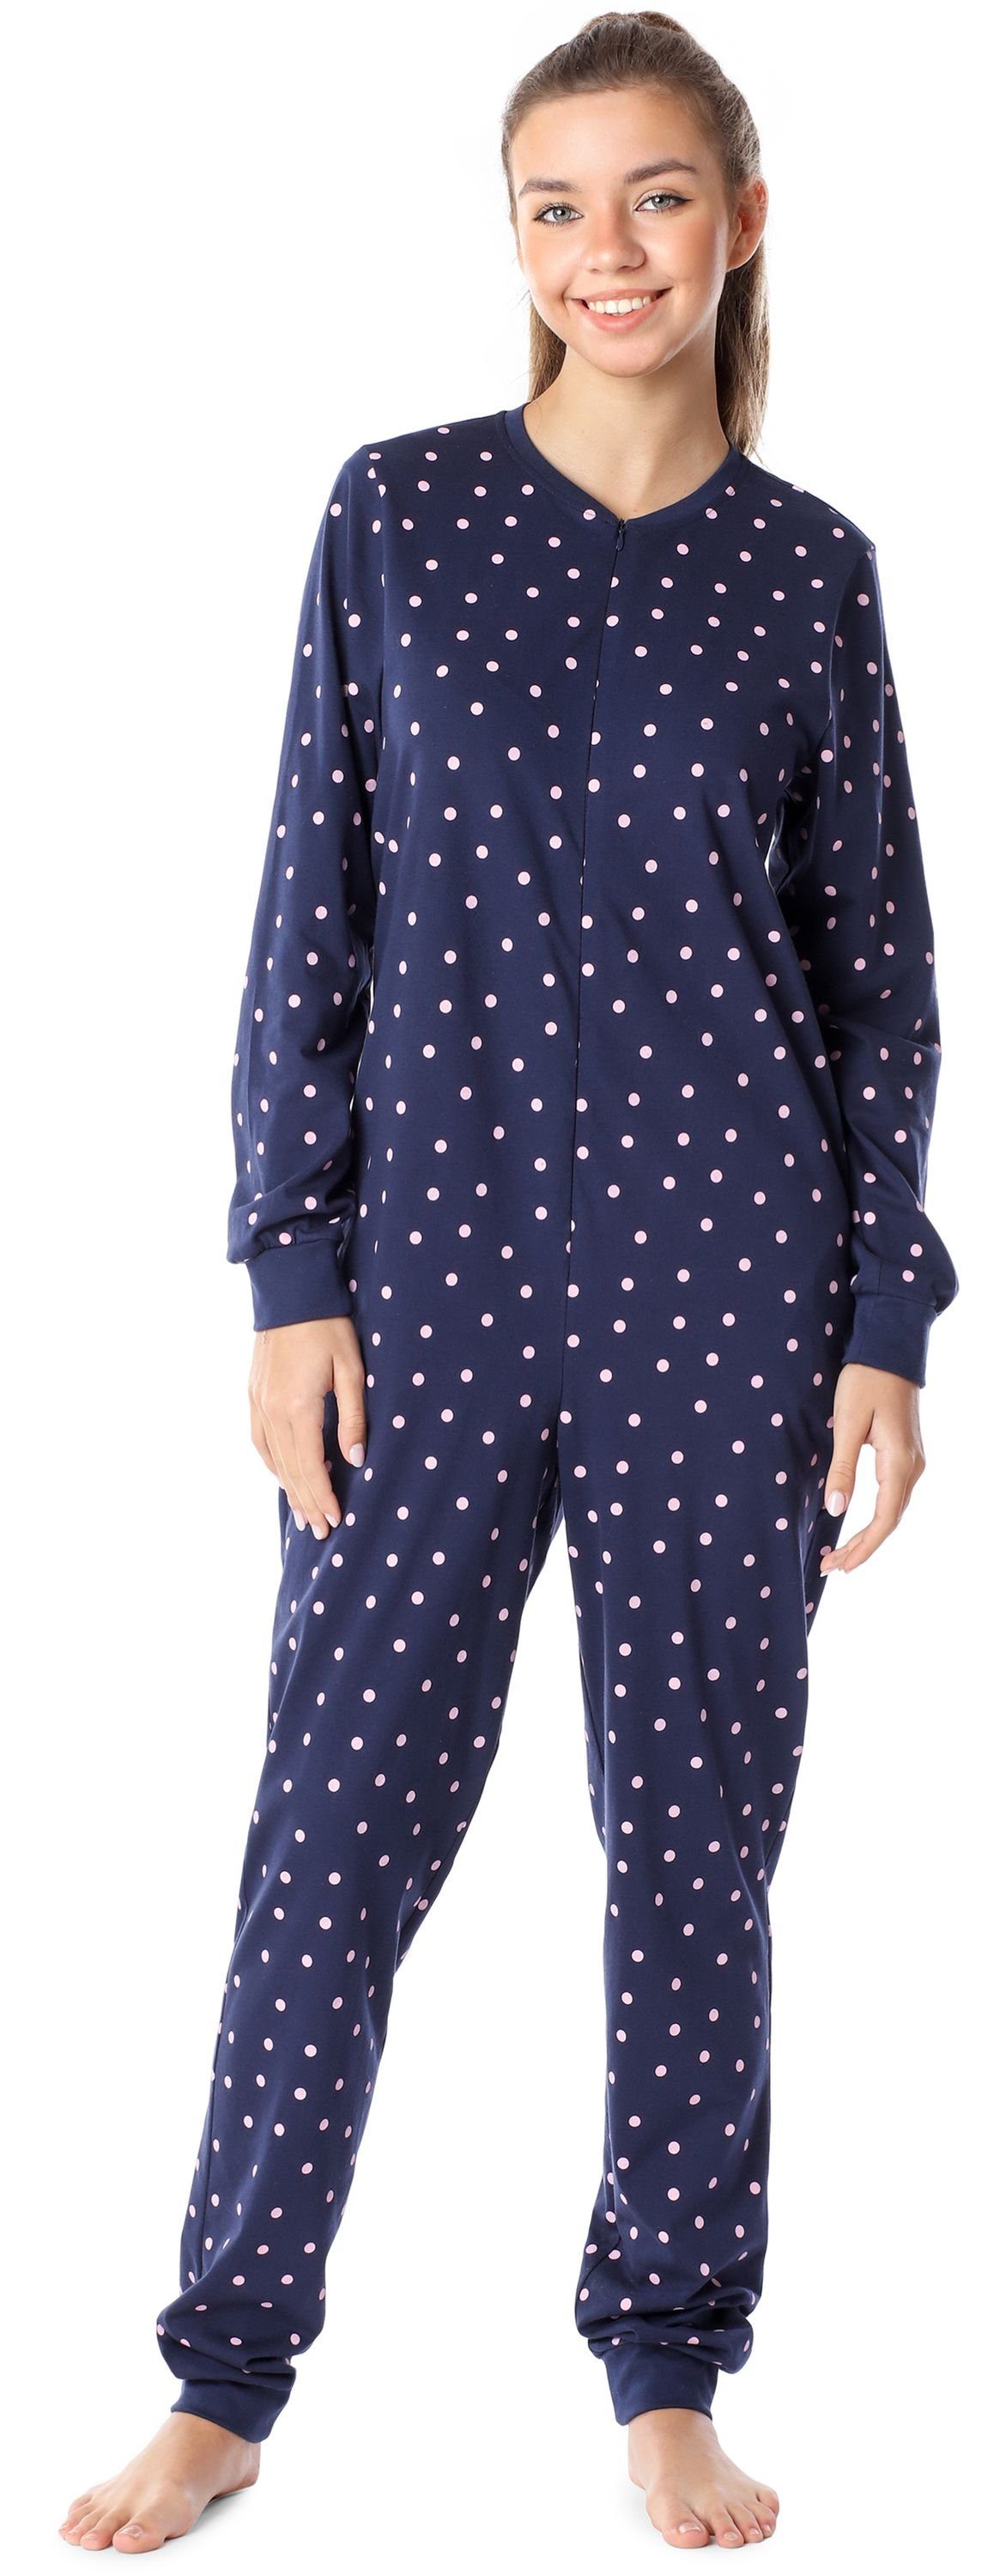 Merry Style Schlafanzug Mädchen Jugend Schlafanzug Schlafoverall MS10-235 Marine/Punkte